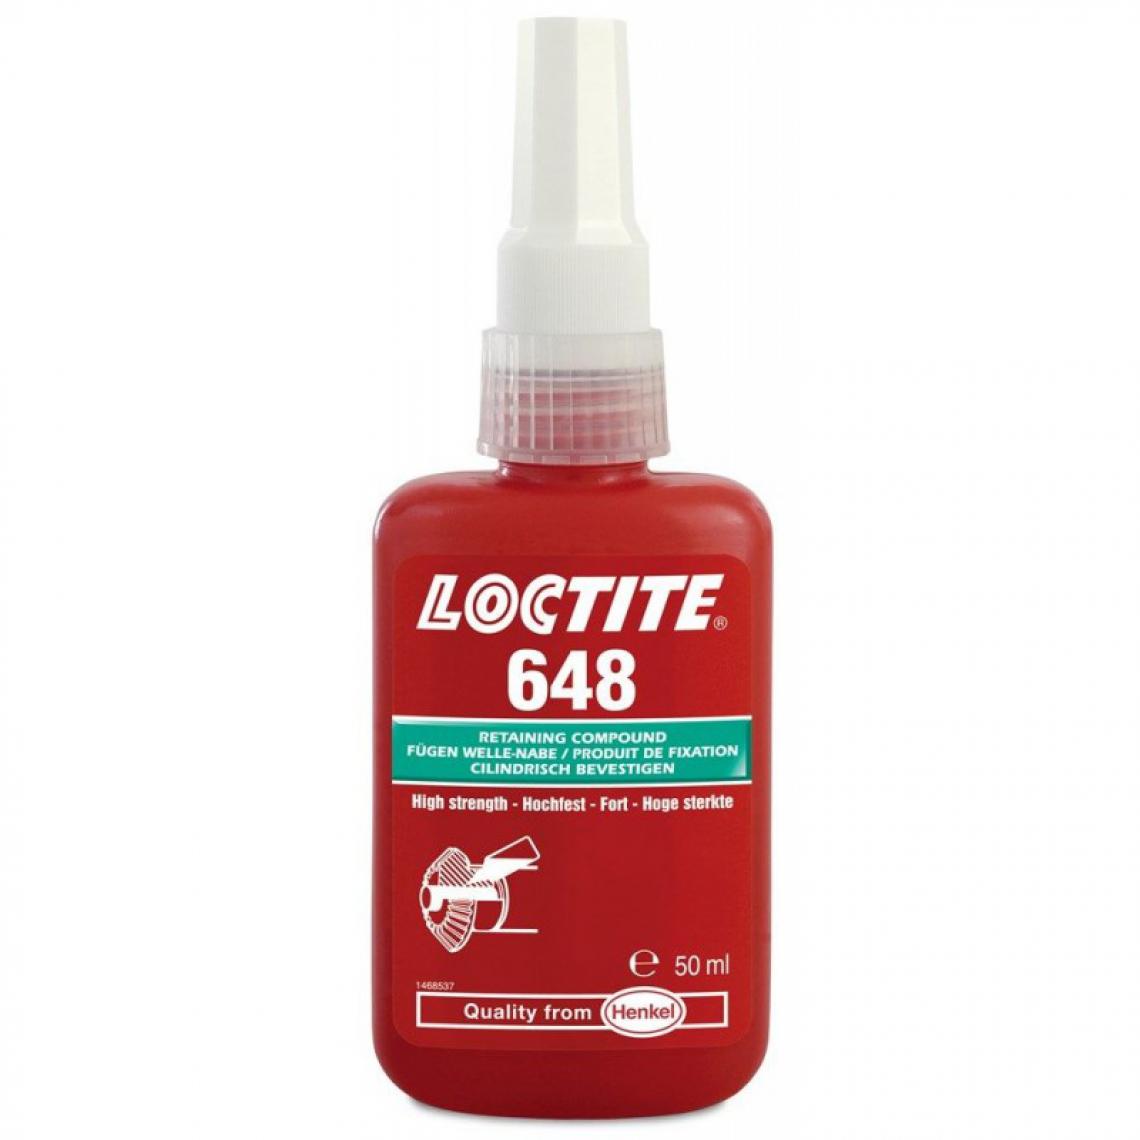 Loctite - Fixation de scellement de haute température Loctite 648 24ml - Colle & adhésif